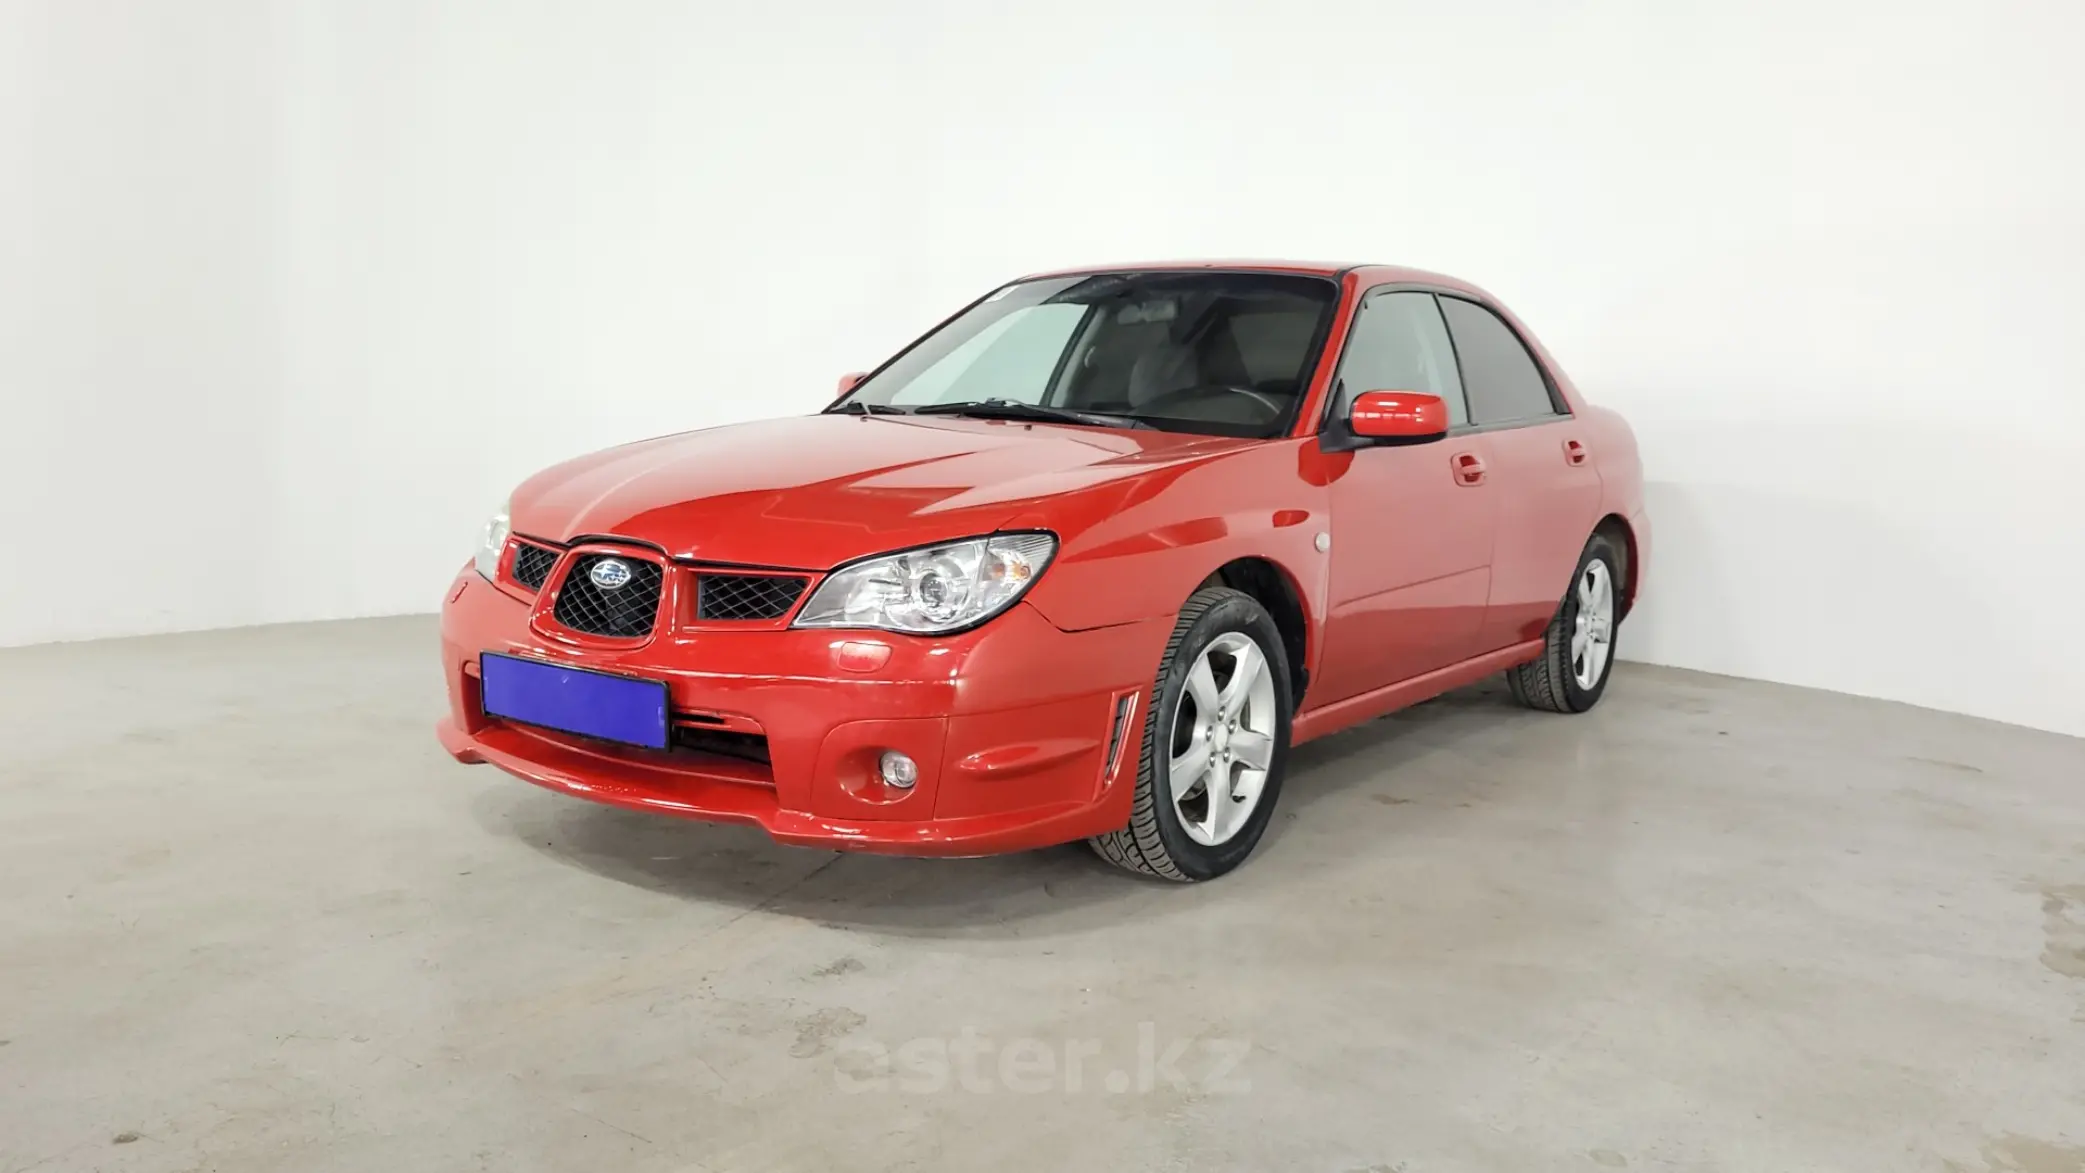 Субару импреза 2006 года. Subaru Impreza 2006. Субару Импреза 2006 красная белый фон. Субару Импреза в 2006 году прайс. Красная Импреза 2 на черных дисках.